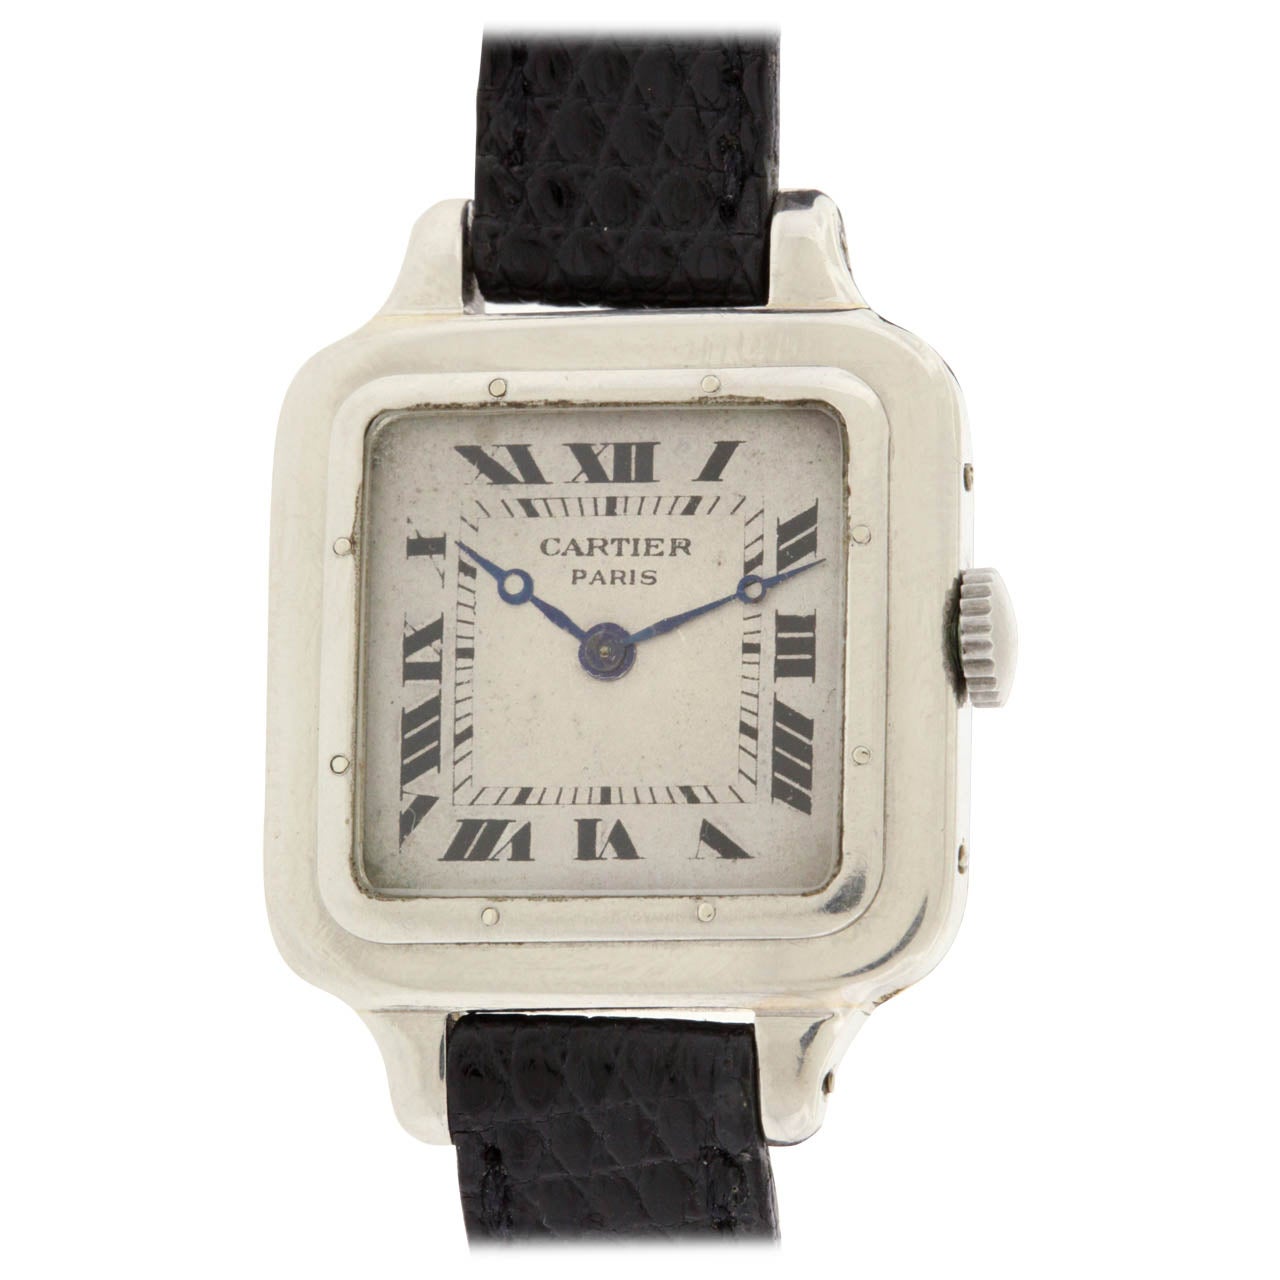 Cartier White Gold Santos Dumont Wristwatch circa 1910s